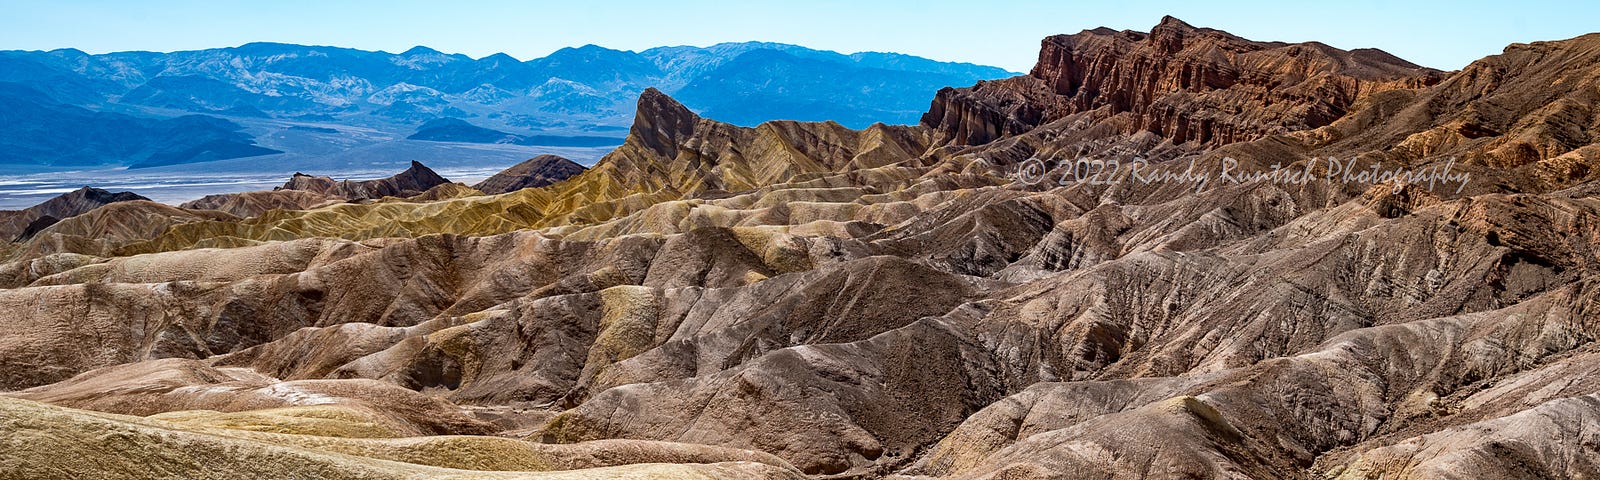 Zabriskie Point in Death Valley.